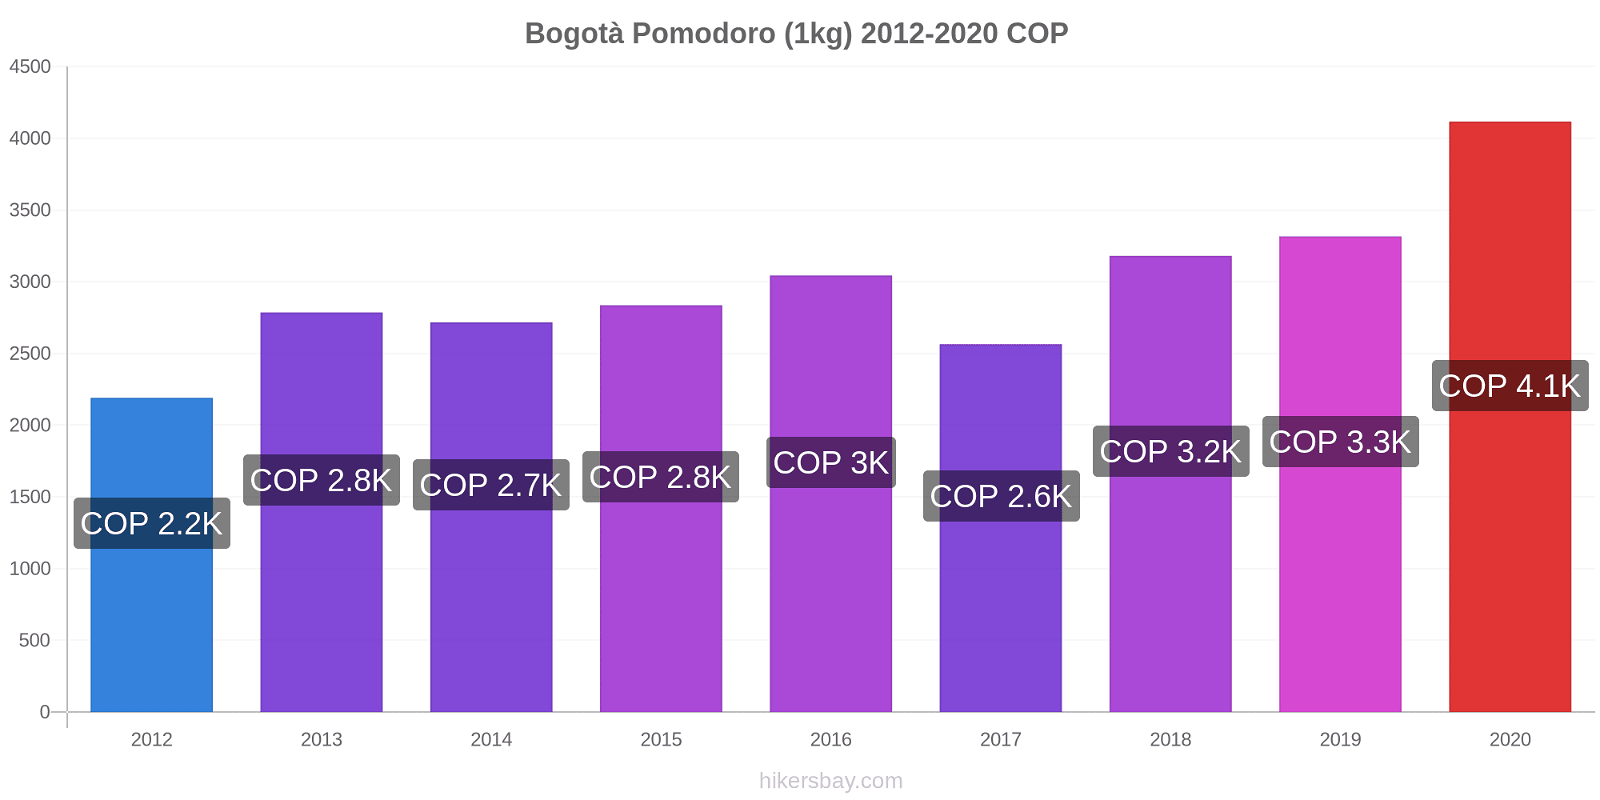 Bogotà variazioni di prezzo Pomodoro (1kg) hikersbay.com